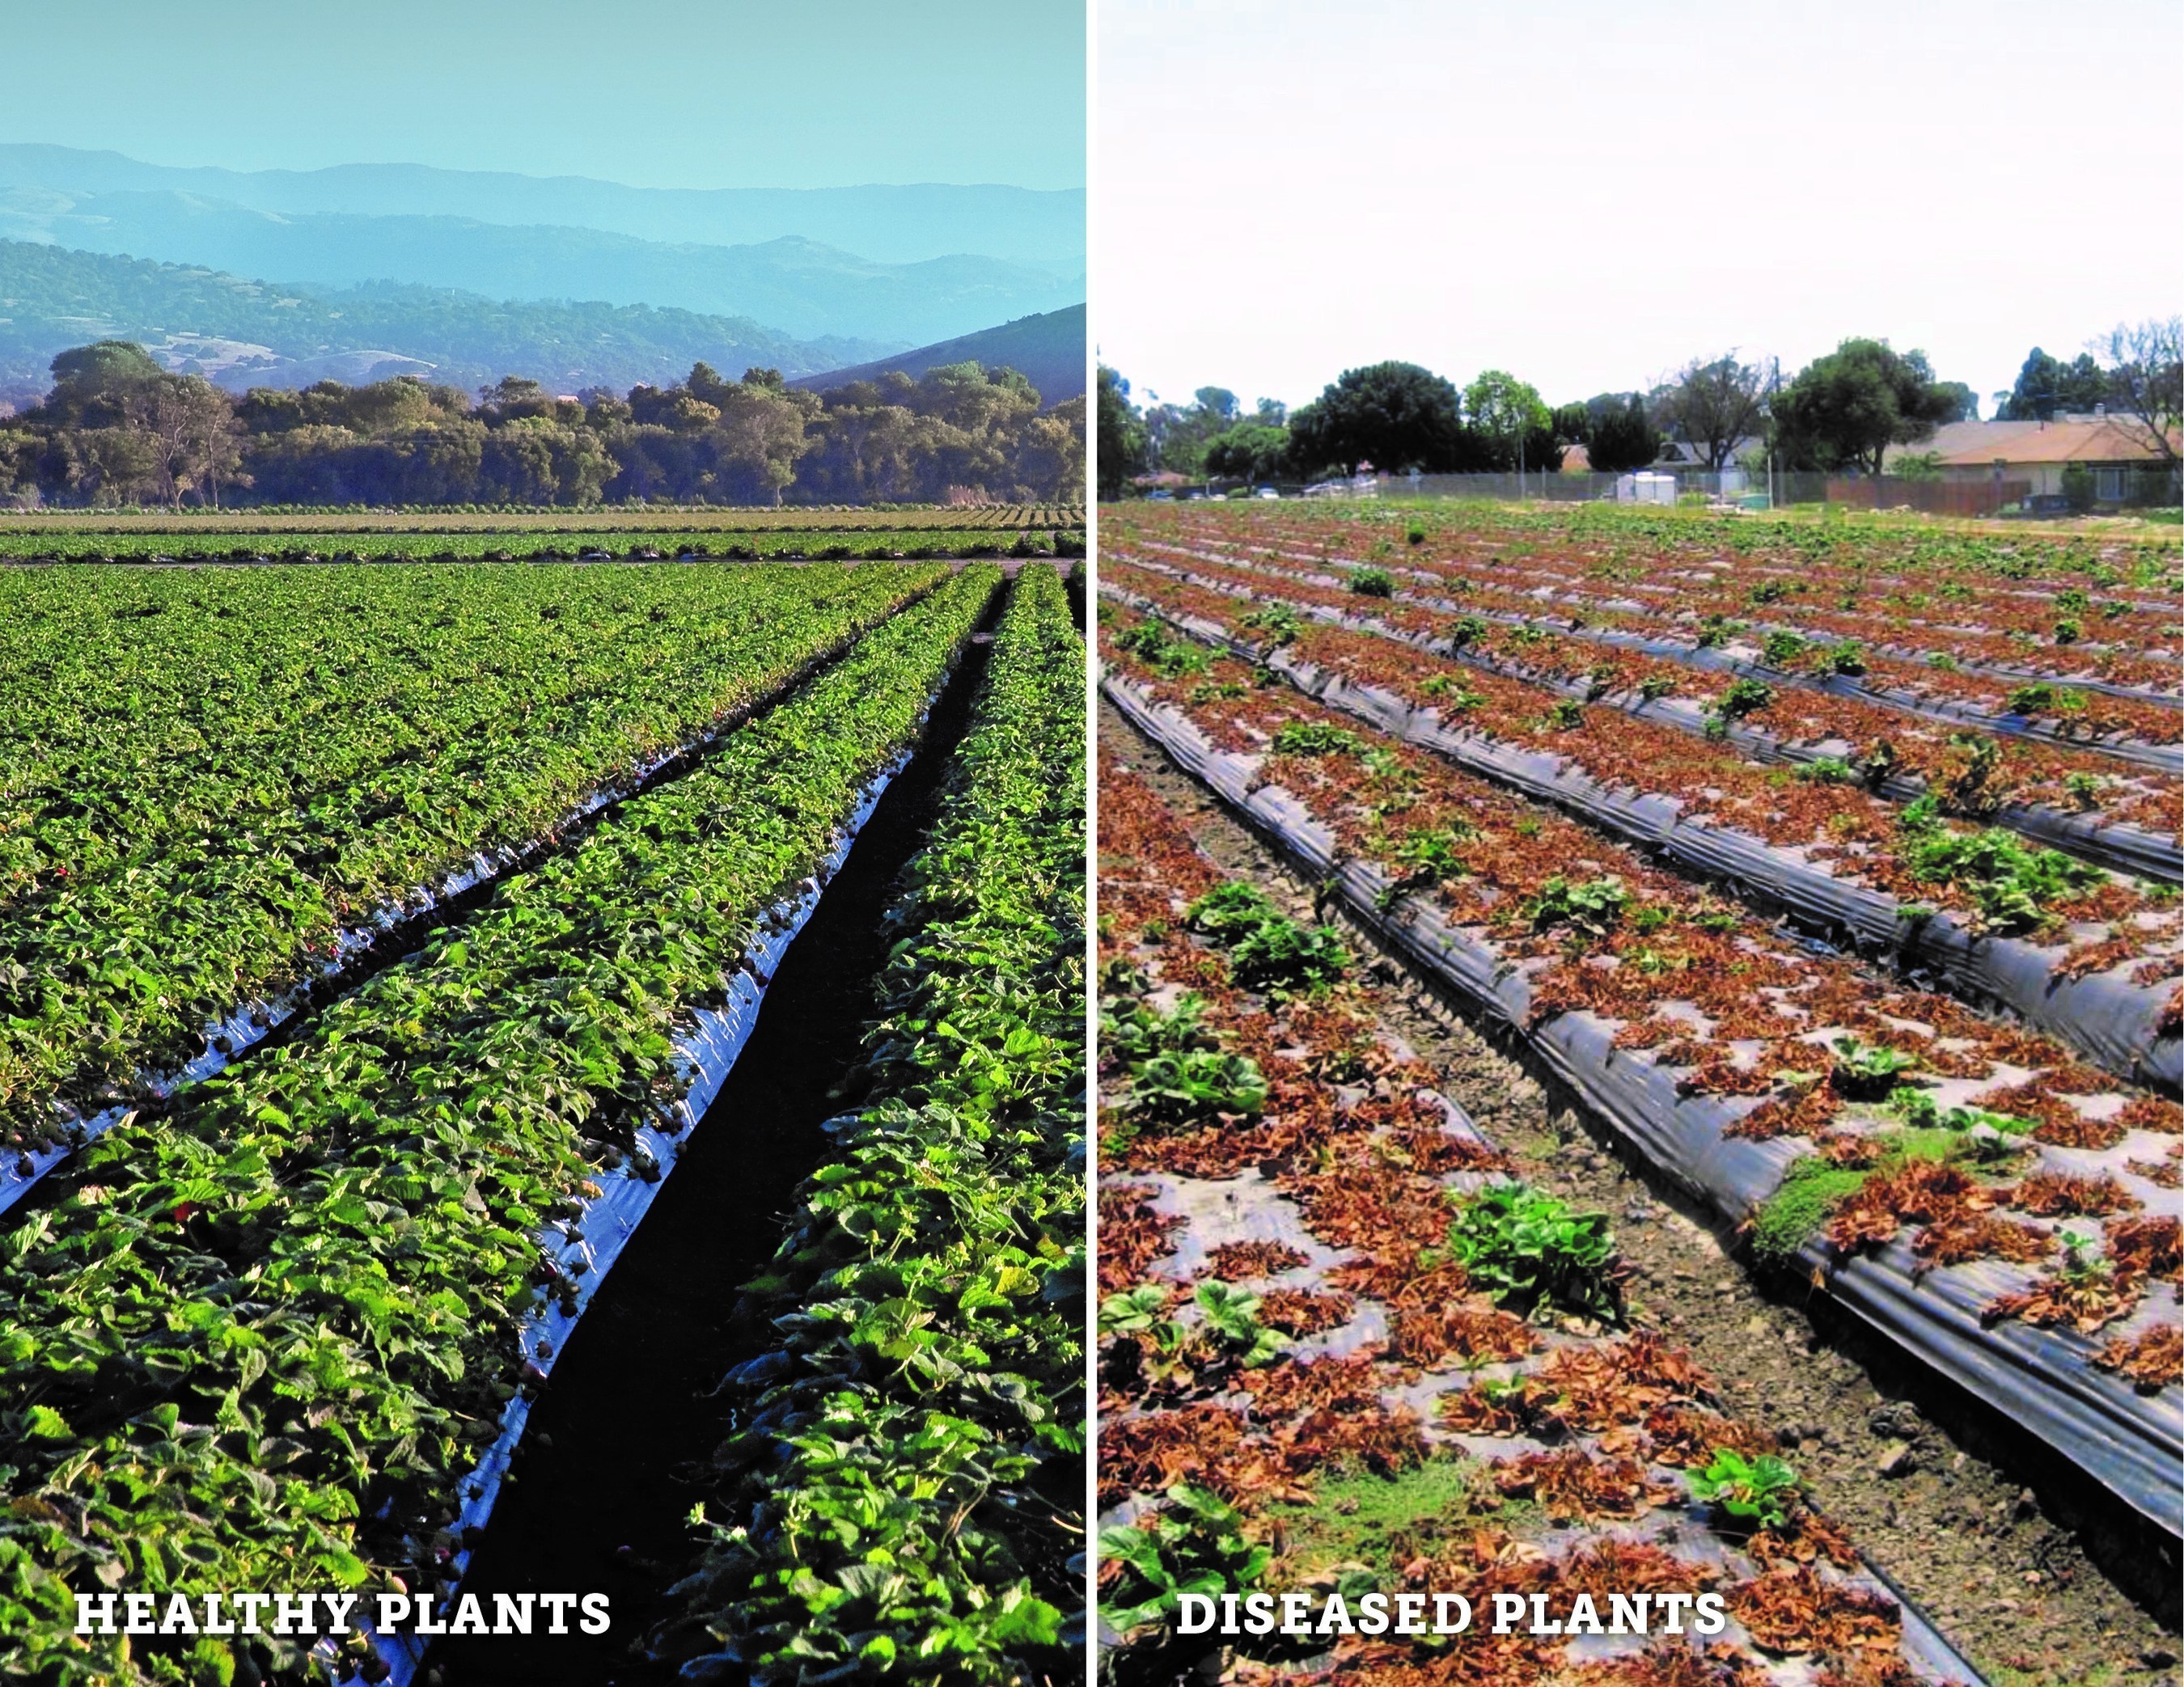 Healthy vs. Diseased Strawberry Fields.